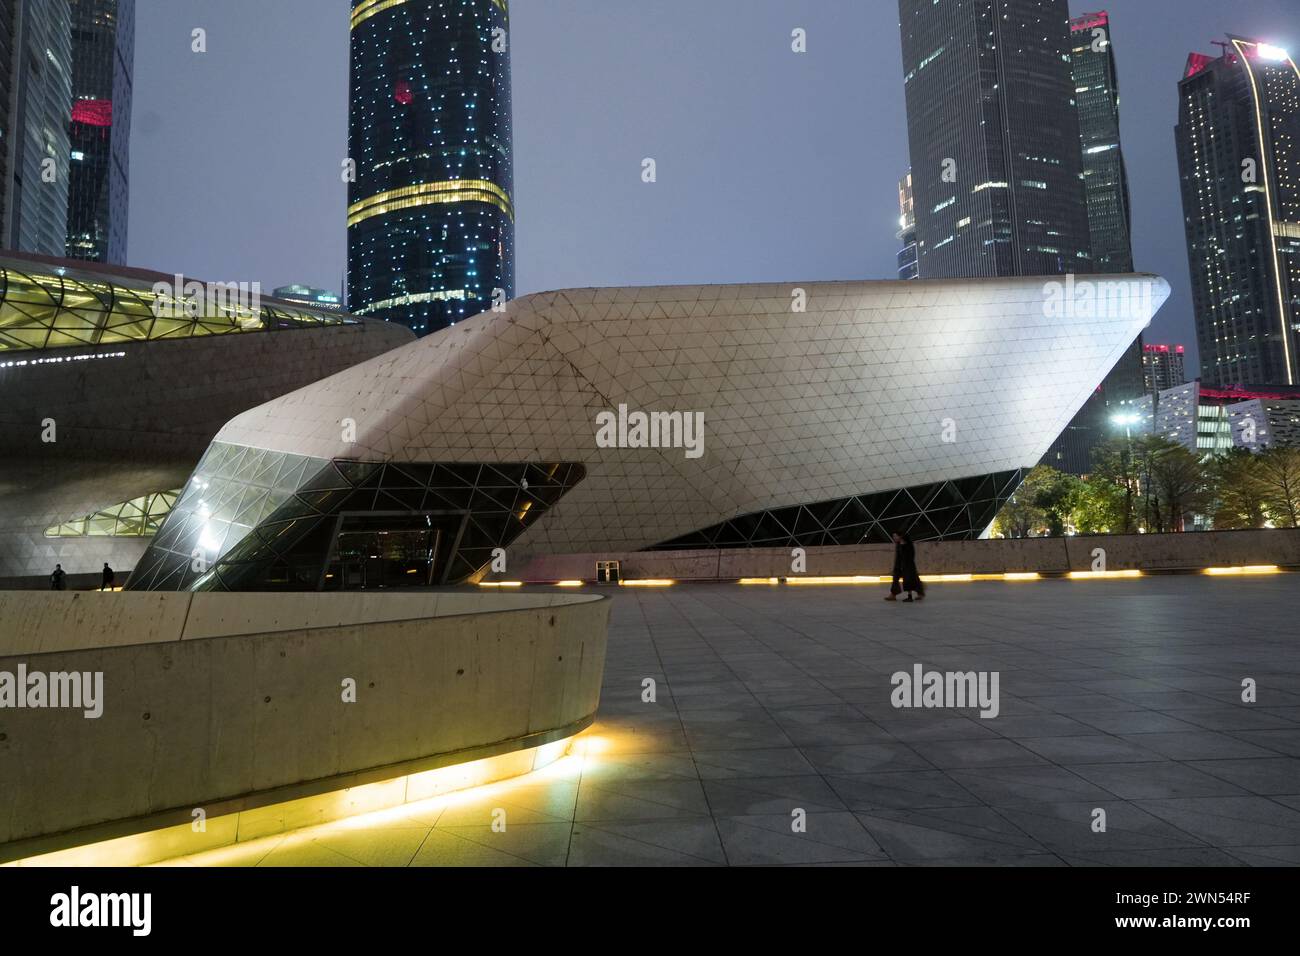 L'opéra de Guangzhou, l'un des nouveaux monuments de Guangzhou, conçu par l'architecte Zaha Hadid. Guangzhou, Chine - 24 février 2024 Banque D'Images